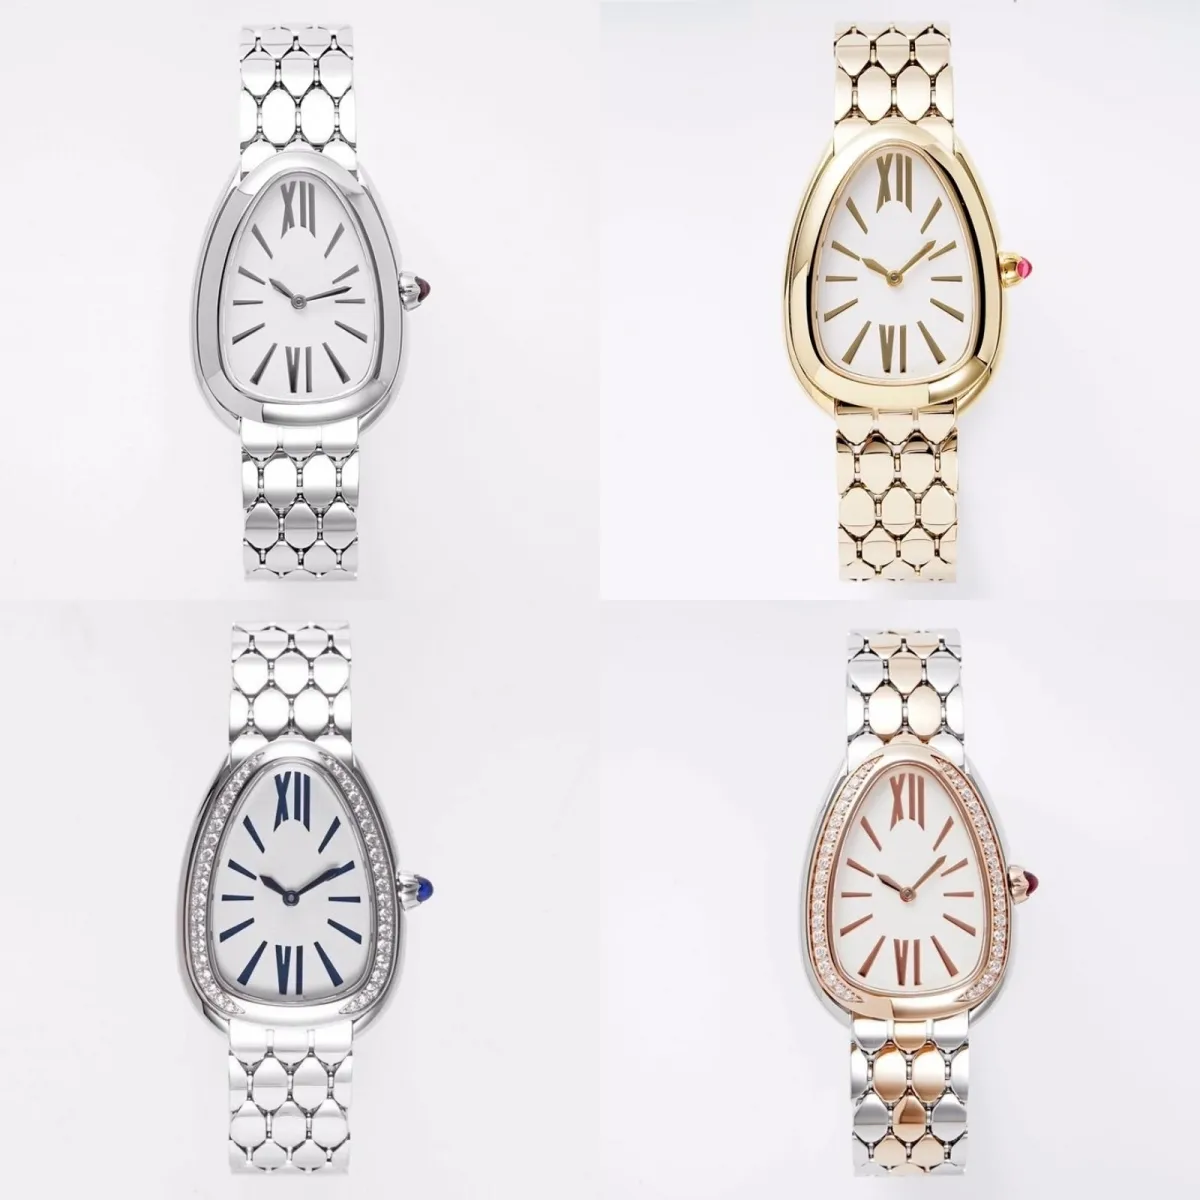 뉴스 AAA 럭셔리 패션 시계 레이디스 시계 세트 클래식 다이아몬드 링 다이얼 쿼츠 배터리